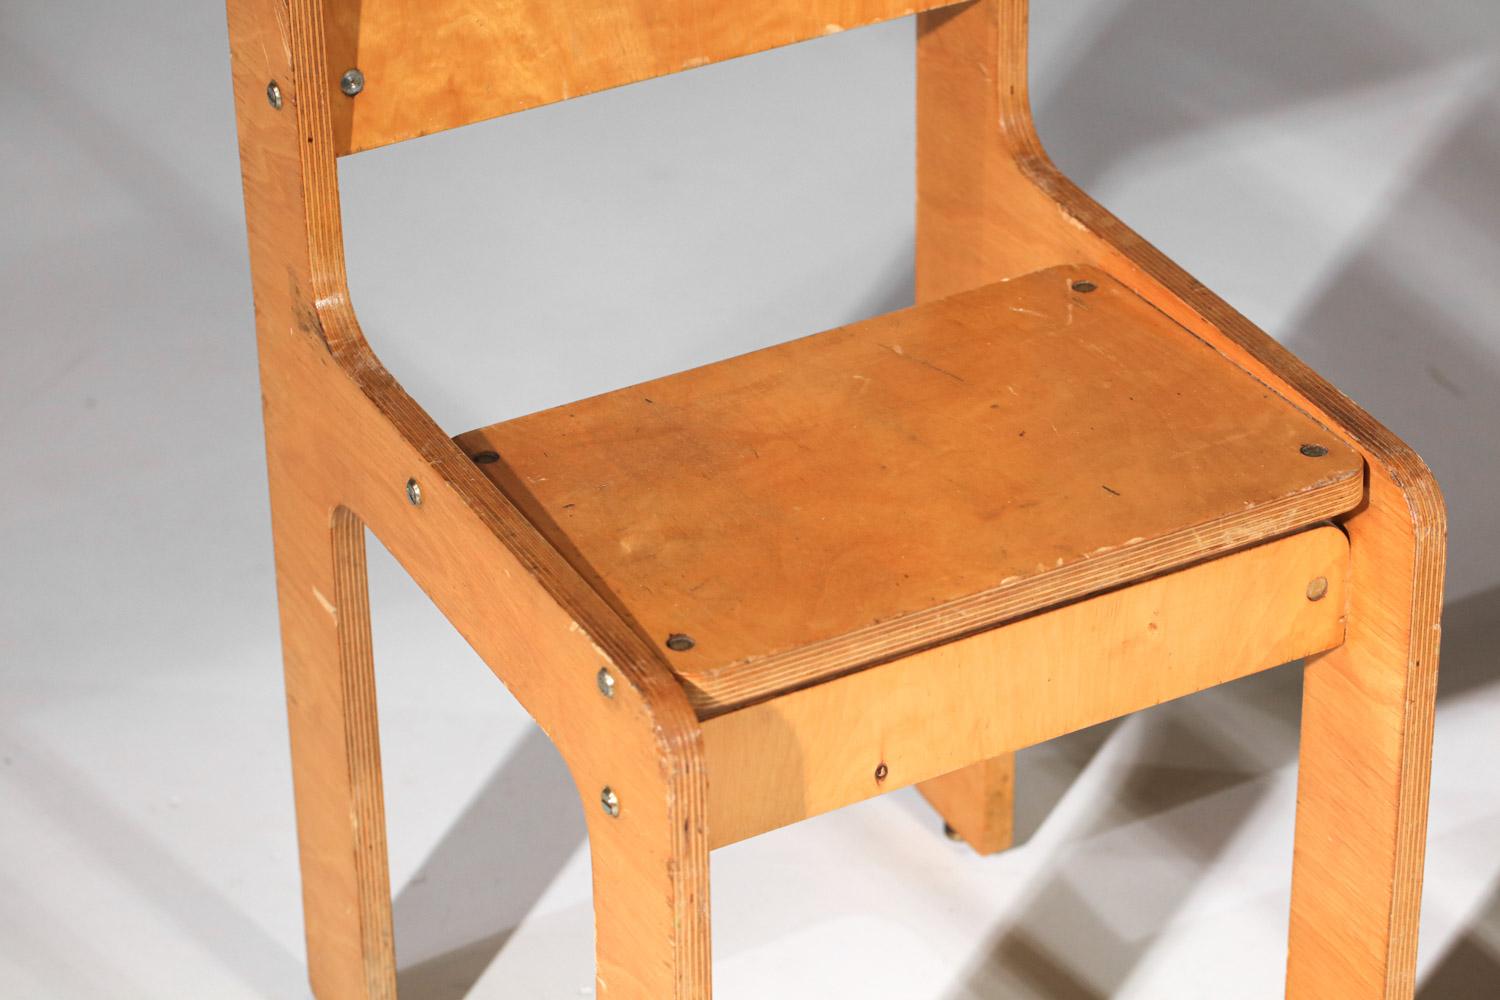 Ein Paar französische Stühle aus den 70er Jahren. Rahmen aus Kiefernsperrholz. Ein klares, modernistisches Design, das an den Stil von Alvar Aalto aus dieser Zeit erinnert. Schöner Vintage-Zustand, mit zahlreichen Alters- und Gebrauchsspuren im